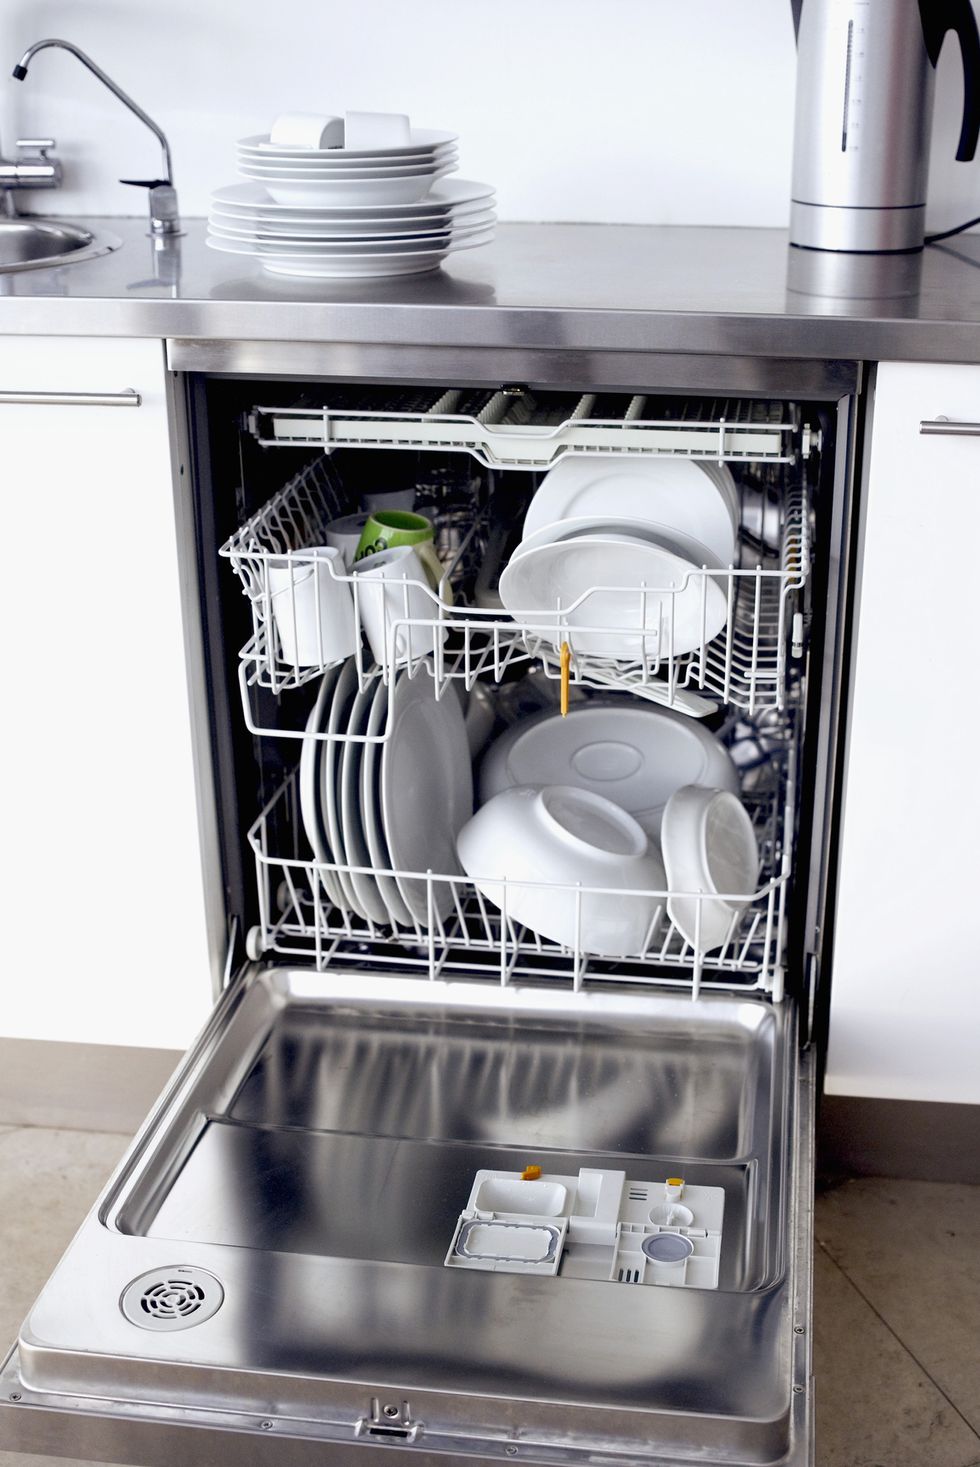 20 تغییر سبز - 4. عملکرد Heat Dry ماشین ظرفشویی خود را خاموش کنید